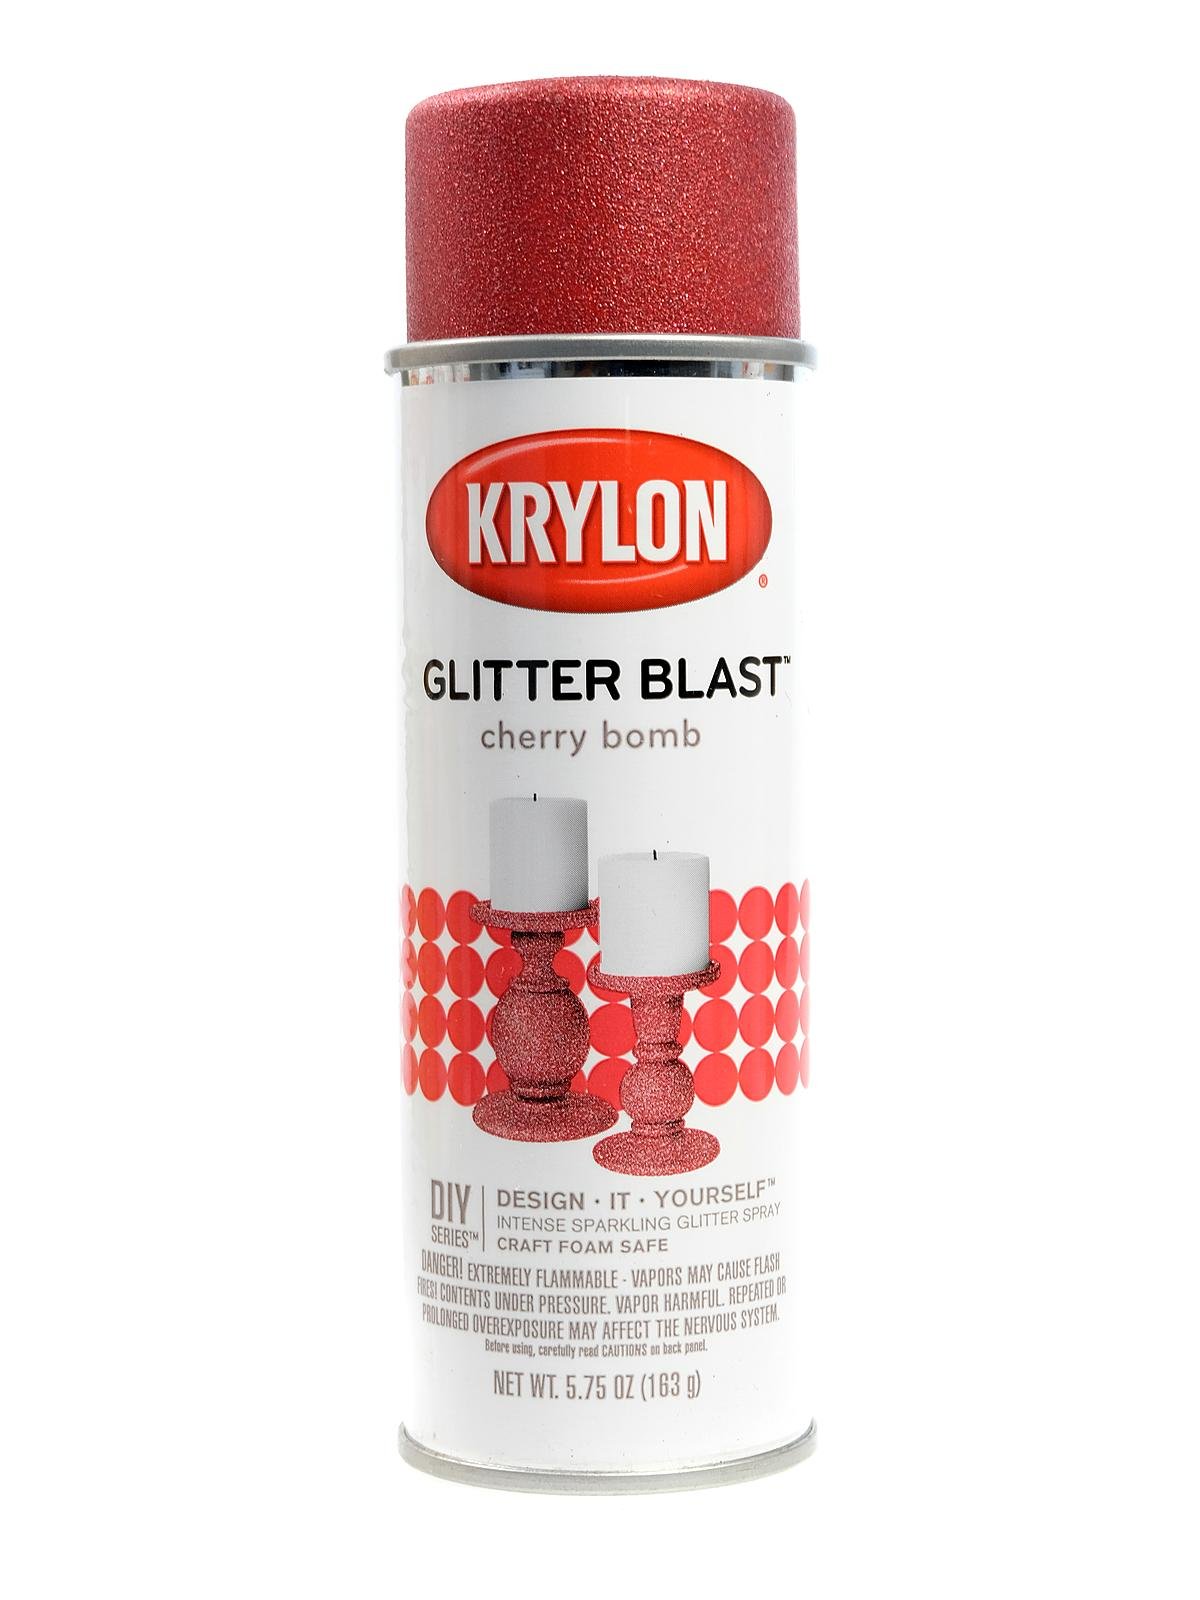 Krylon® Glitter Shimmer Spray Paint